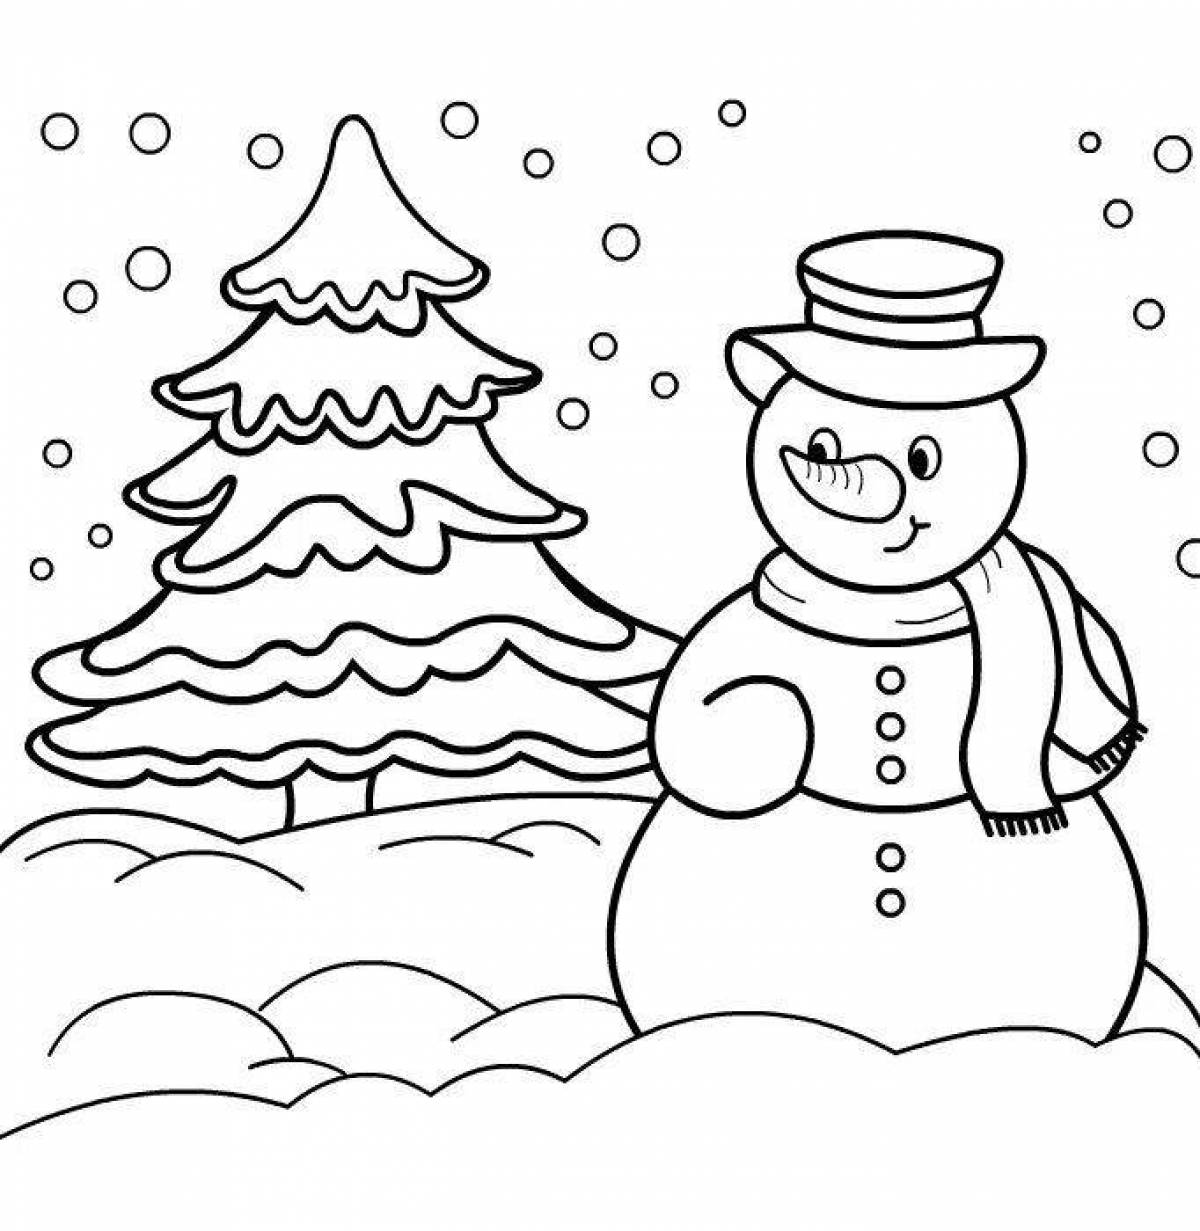 Изысканная раскраска снеговик для детей 6-7 лет